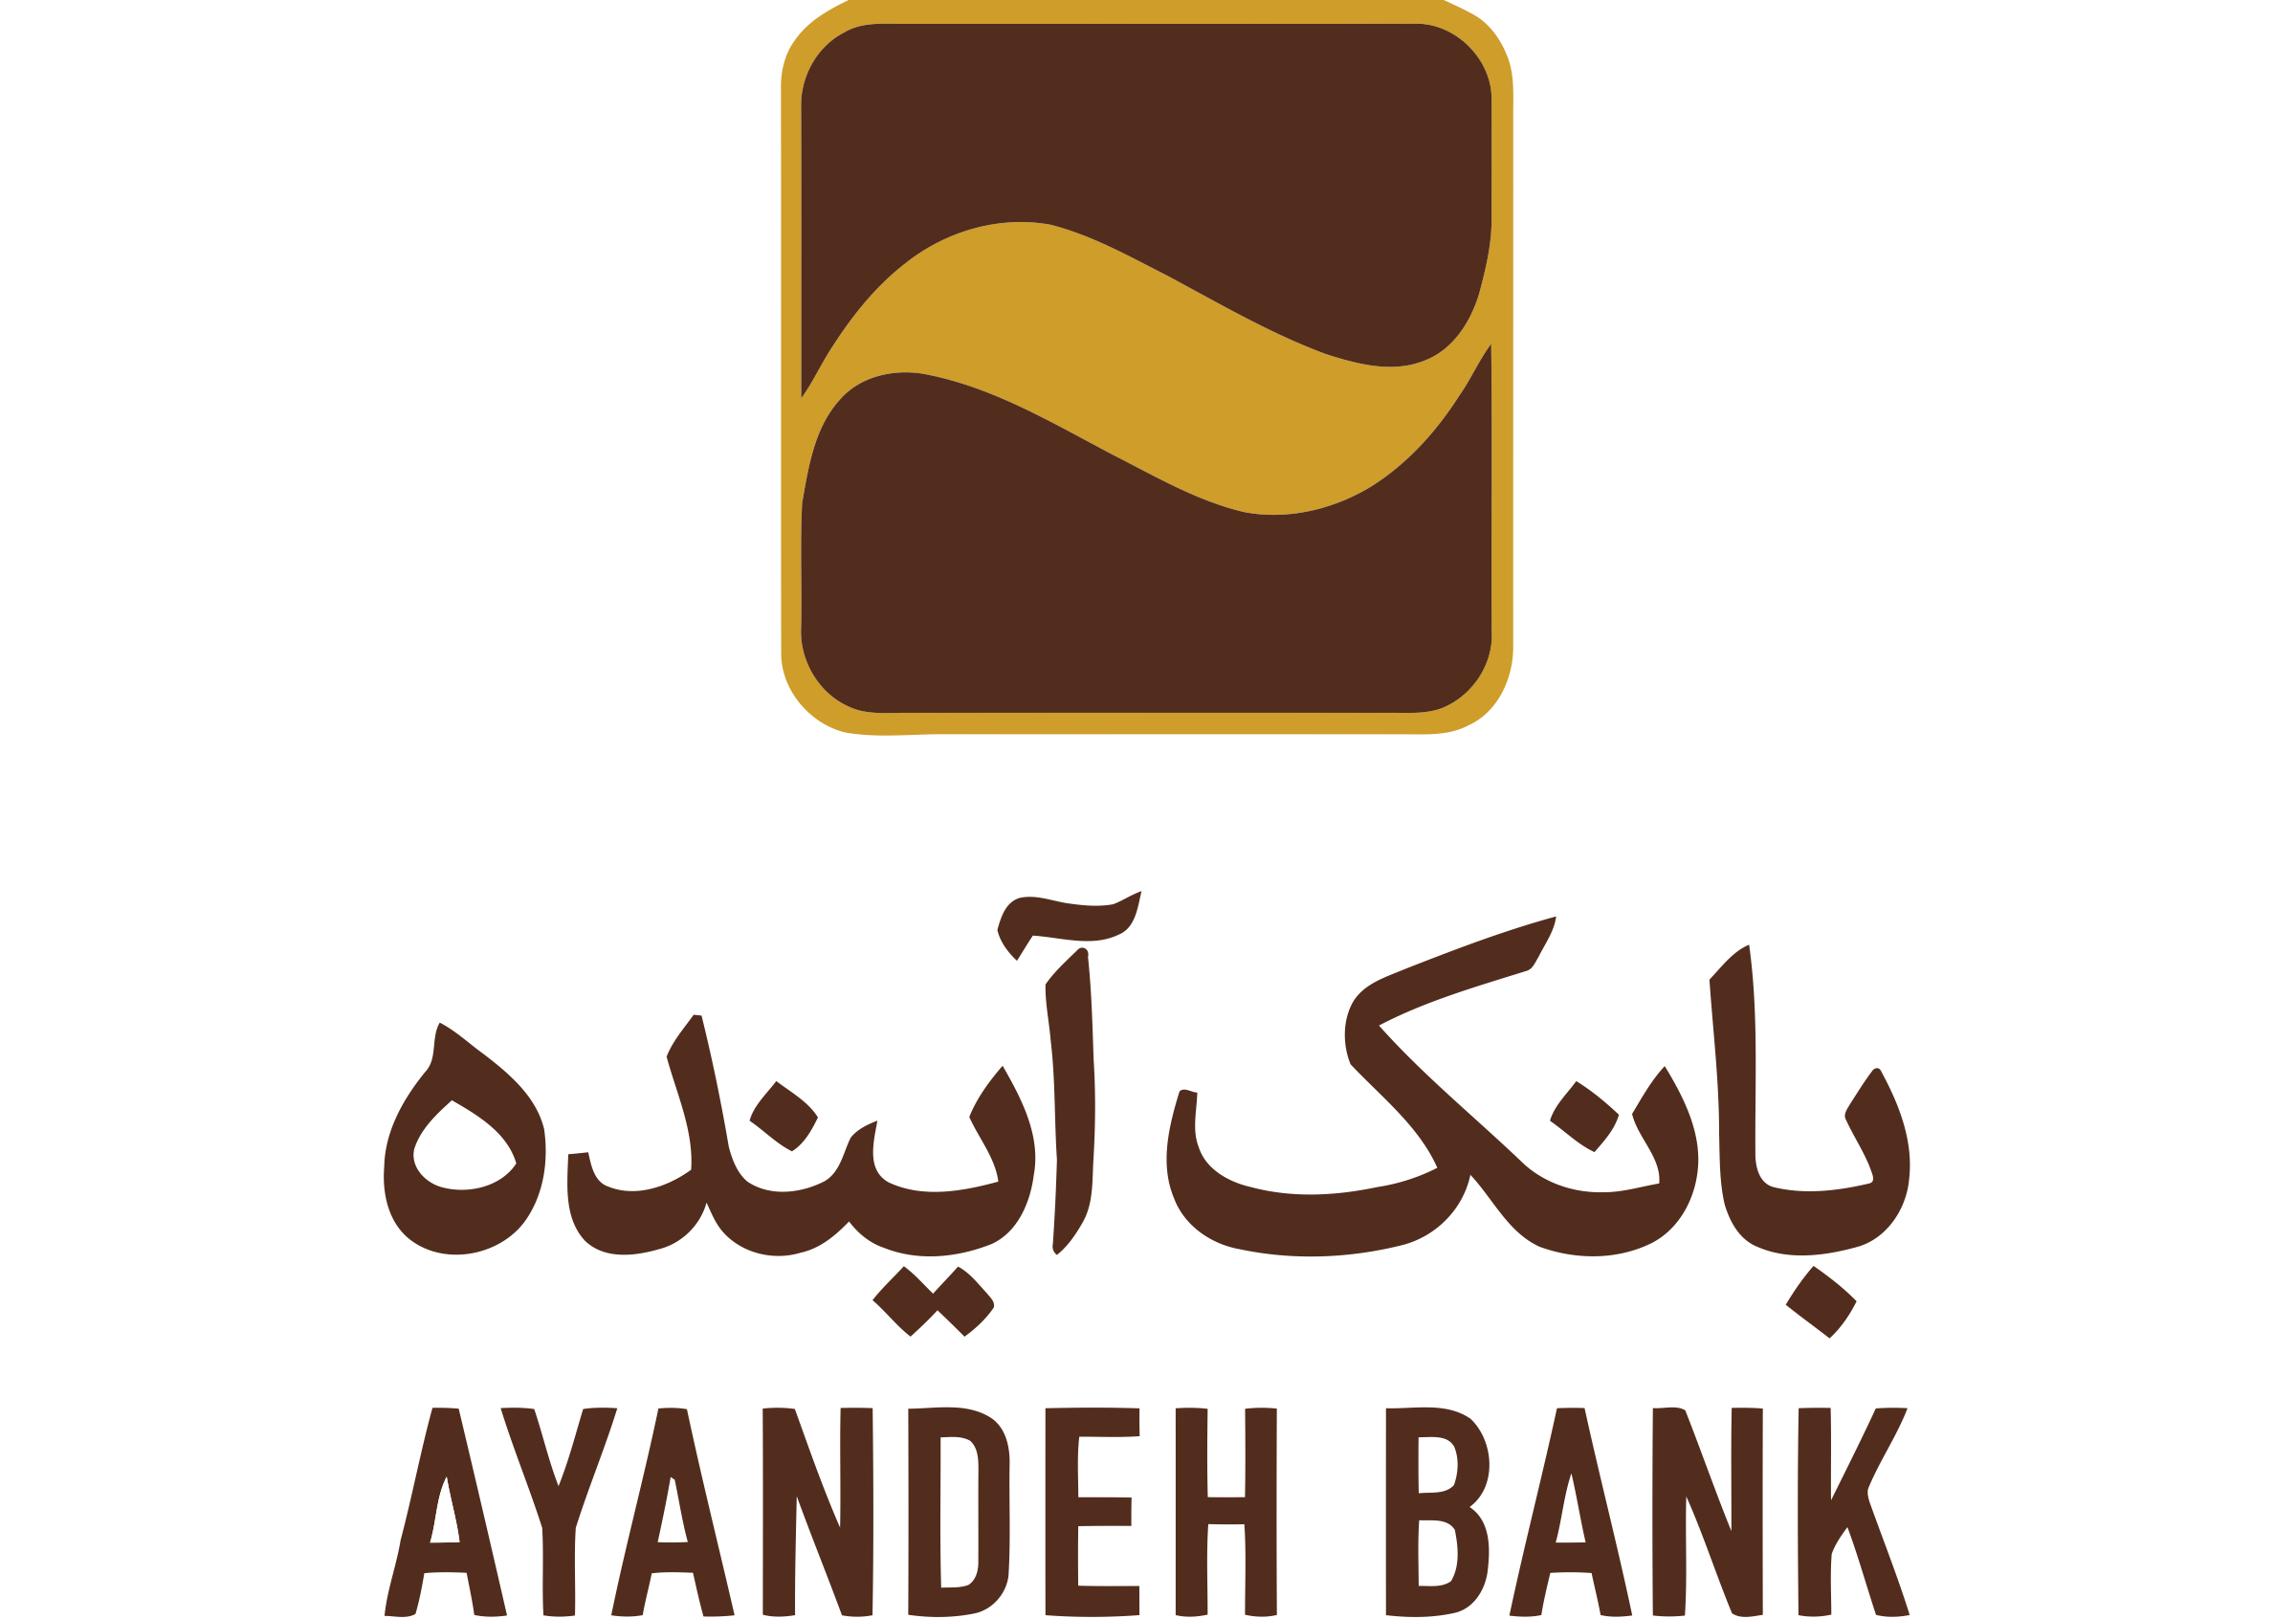 انتخاب بانک آینده از طرف بنکر به عنوان بانک سال جمهوری اسلامی ایران در ۲۰۱۸ میلادی